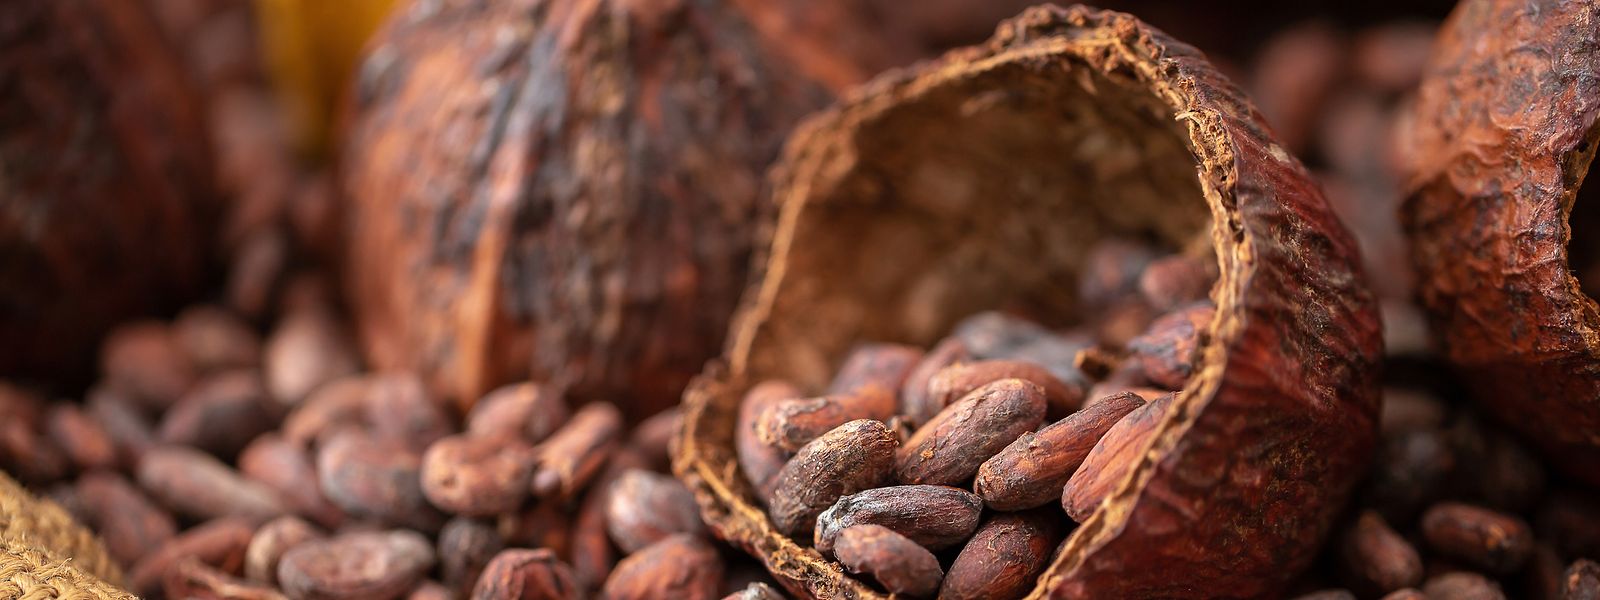 Le cacao, s'il est issu de terres déboisées après décembre 2020, sera désormais interdit à l'importation.